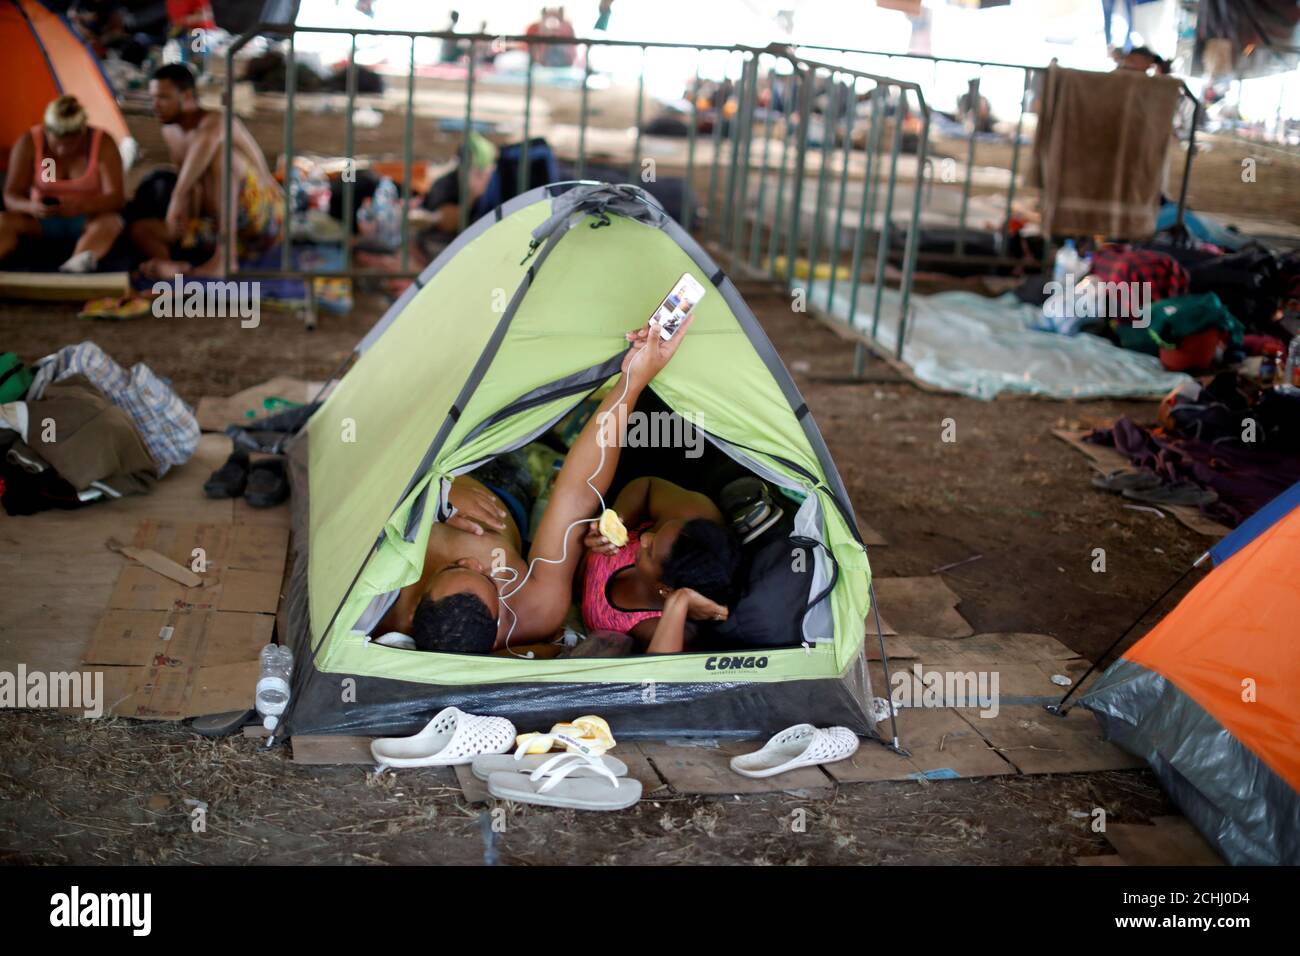 Los migrantes cubanos descansan en su tienda de campaña en un refugio  improvisado mientras esperan una visa humanitaria para cruzar el país de  camino a los Estados Unidos, en Mapastepec, estado de